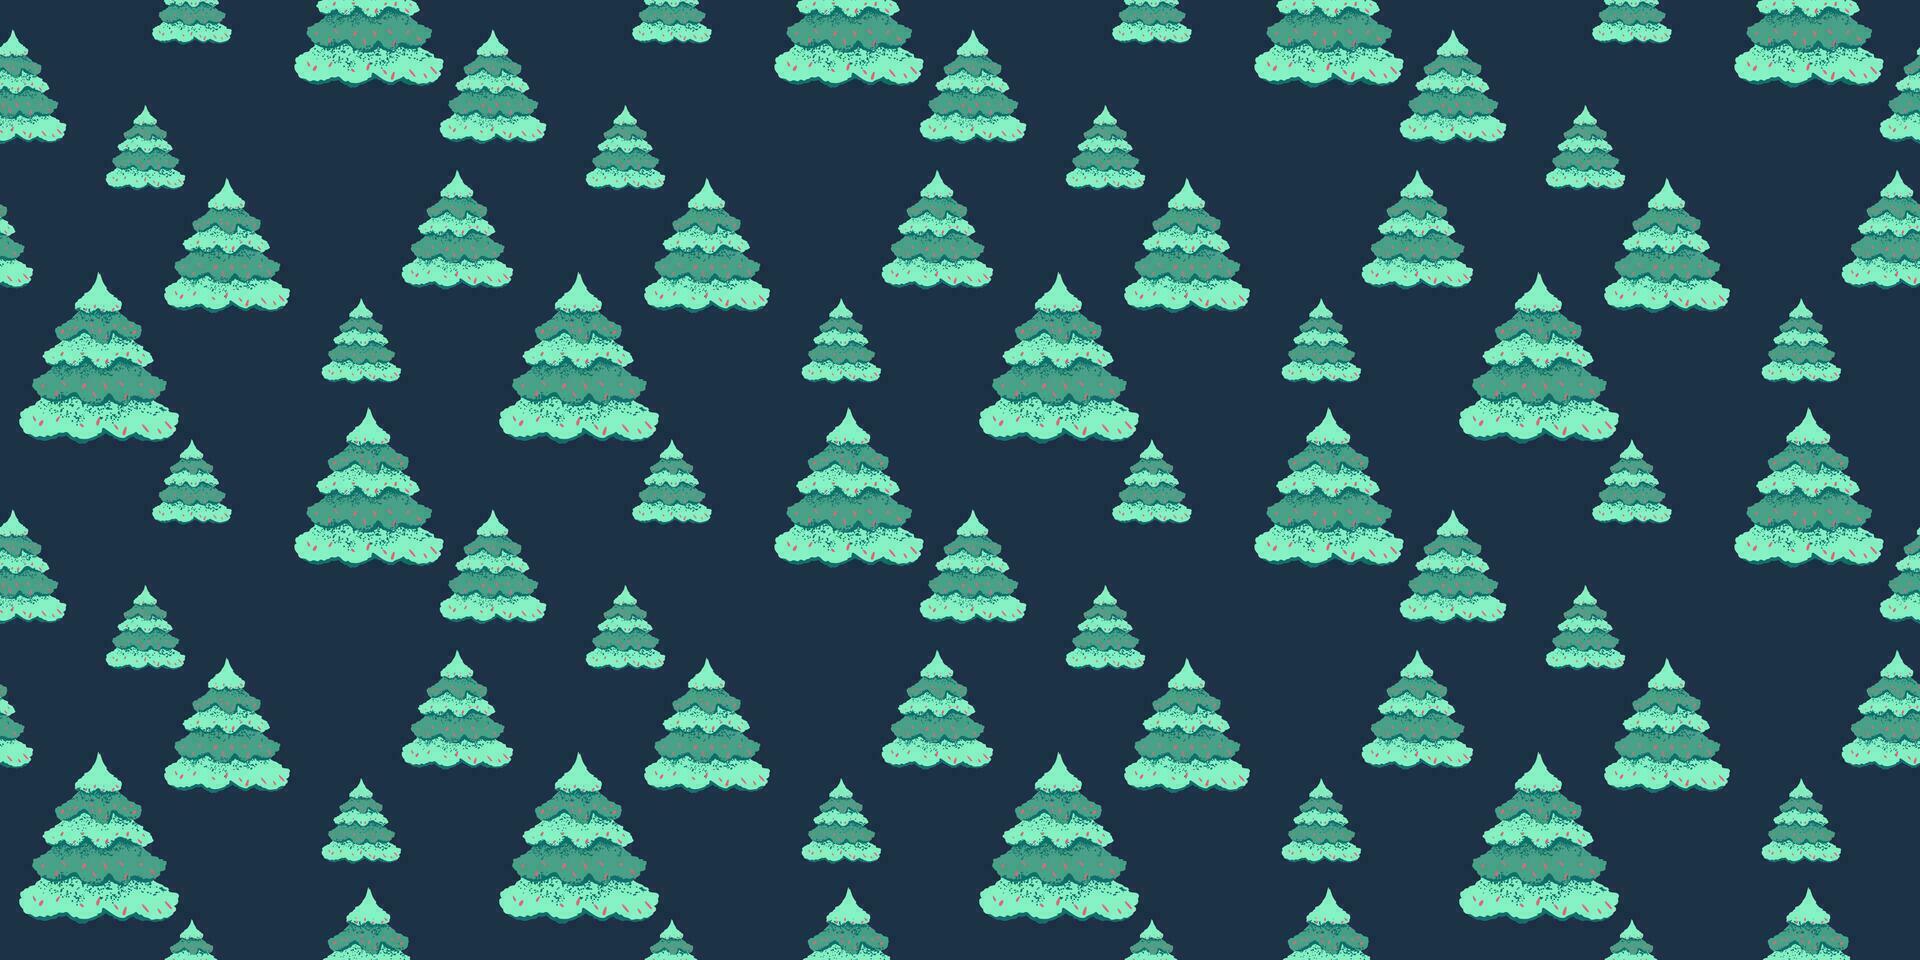 nahtlos Muster mit abstrakt, künstlerisch, einfach Vektor Hand gezeichnet Weihnachten Bäume. süß Weihnachten Hintergrund. Vorlage zum Design, Stoff, Textil, Mode, drucken, Oberfläche Design, Papier, Startseite